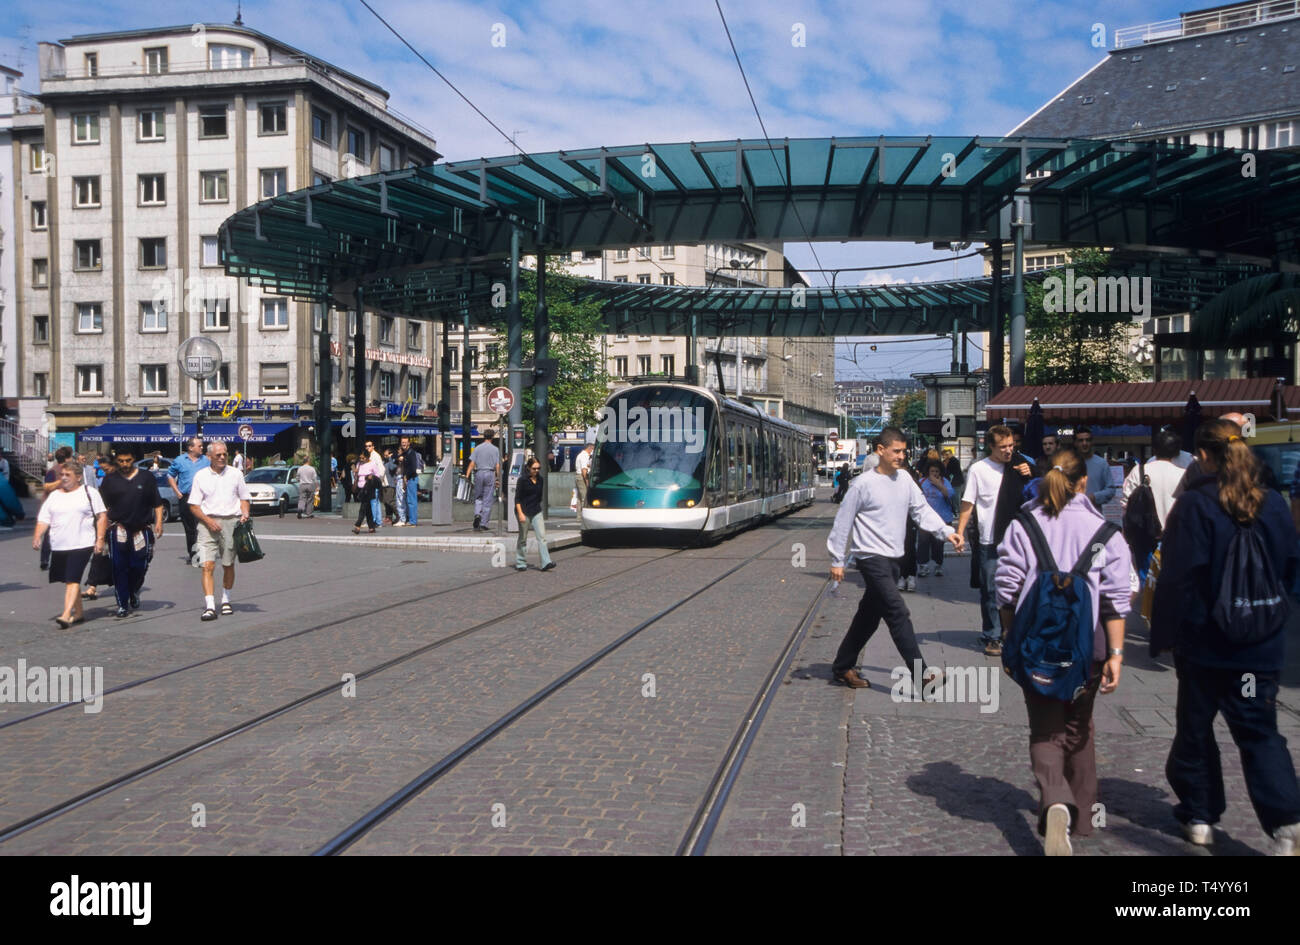 Straßburg, moderne Straßenbahn, Haltestelle Homme de Fer - Straßburg, moderne Straßenbahn, Homme de Fer Station Stockfoto